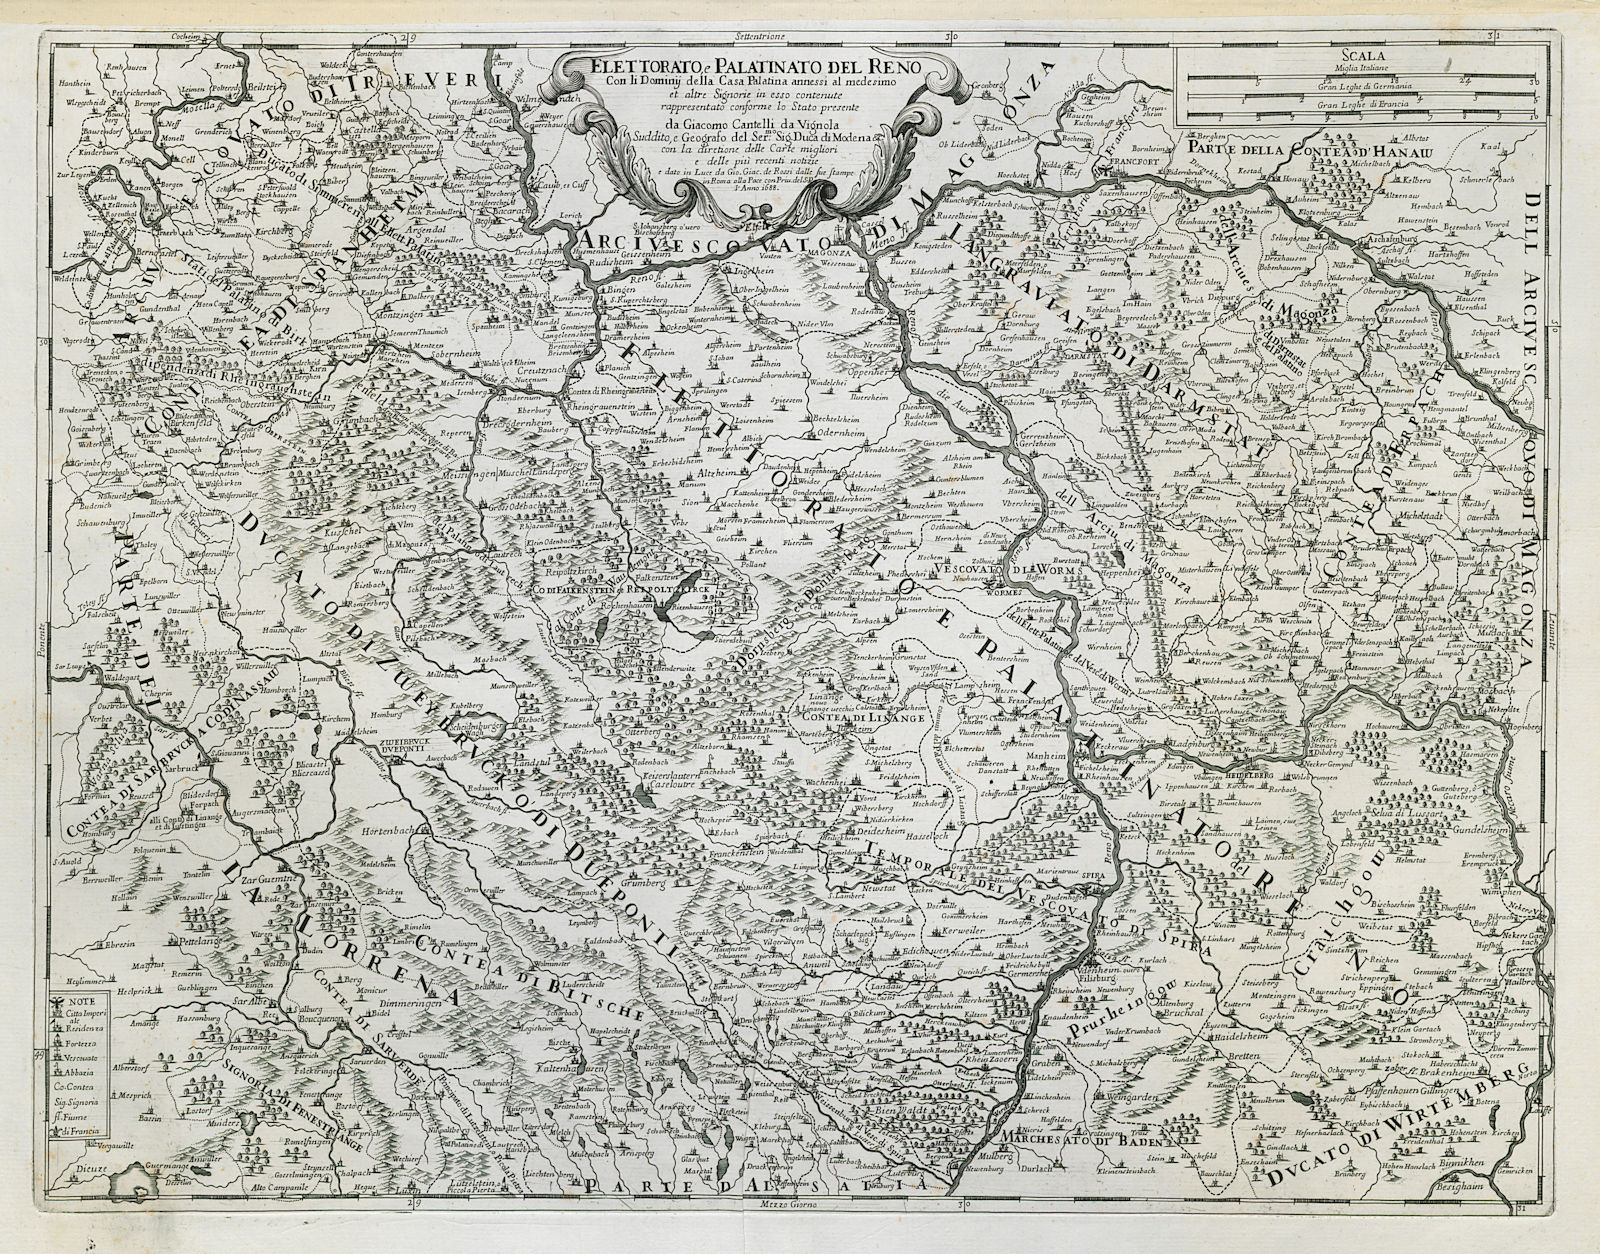 Associate Product Elettorato e Palatinato del Reno. Rheinland-Pfalz south. ROSSI/CANTELLI 1688 map